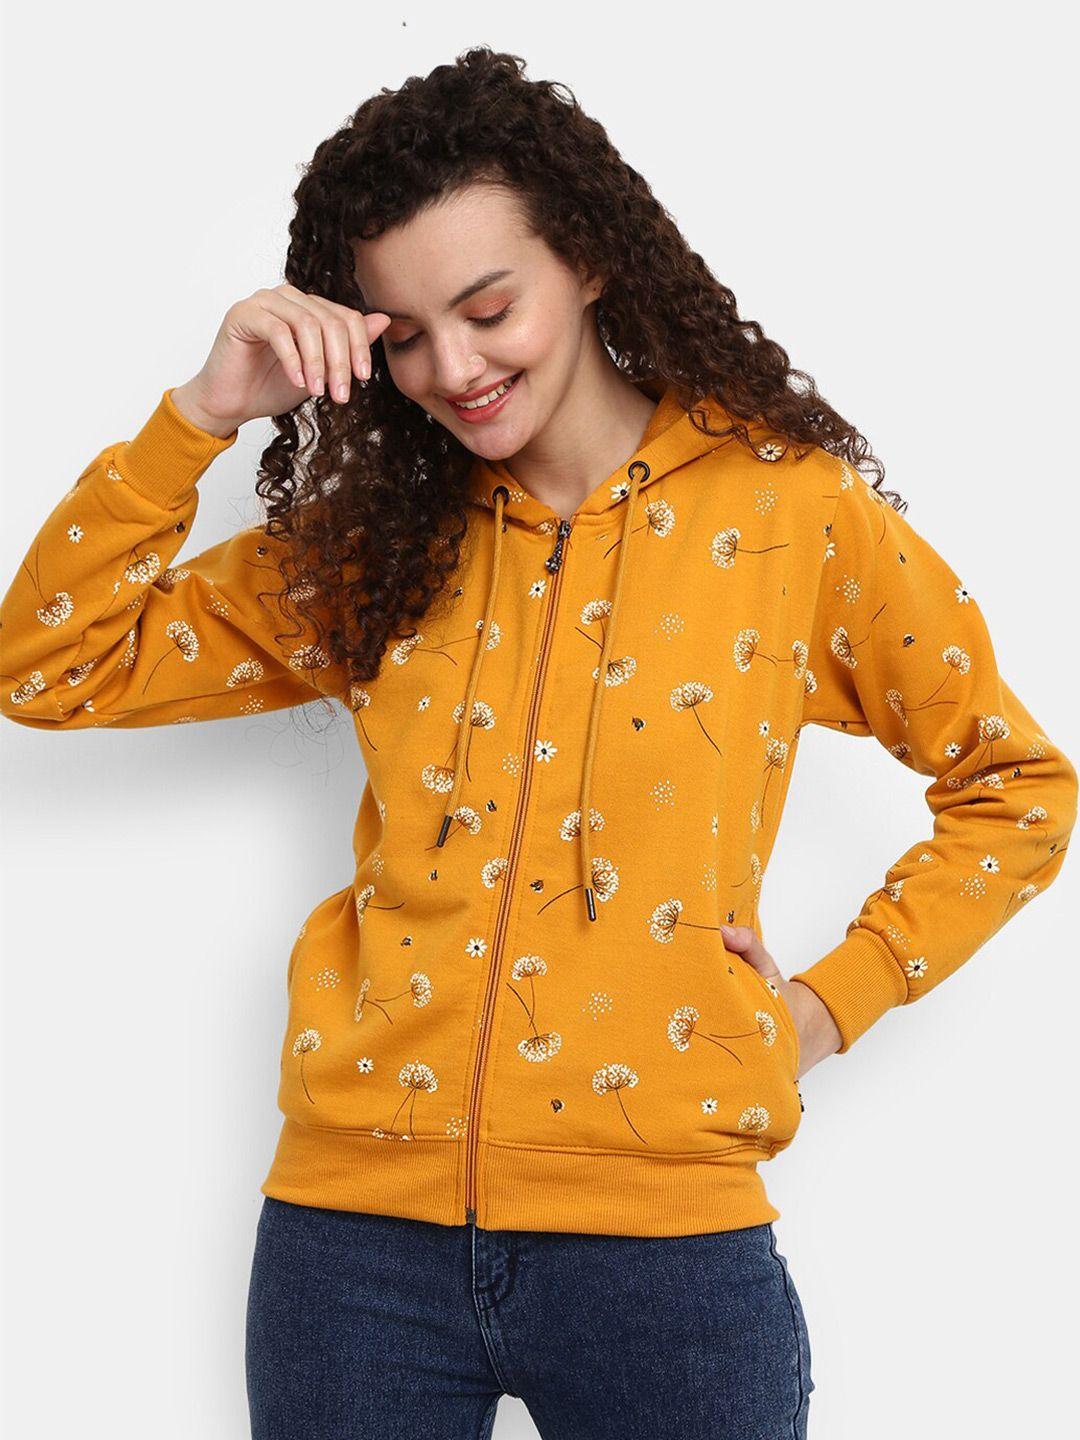 v-mart women mustard yellow printed sweatshirt